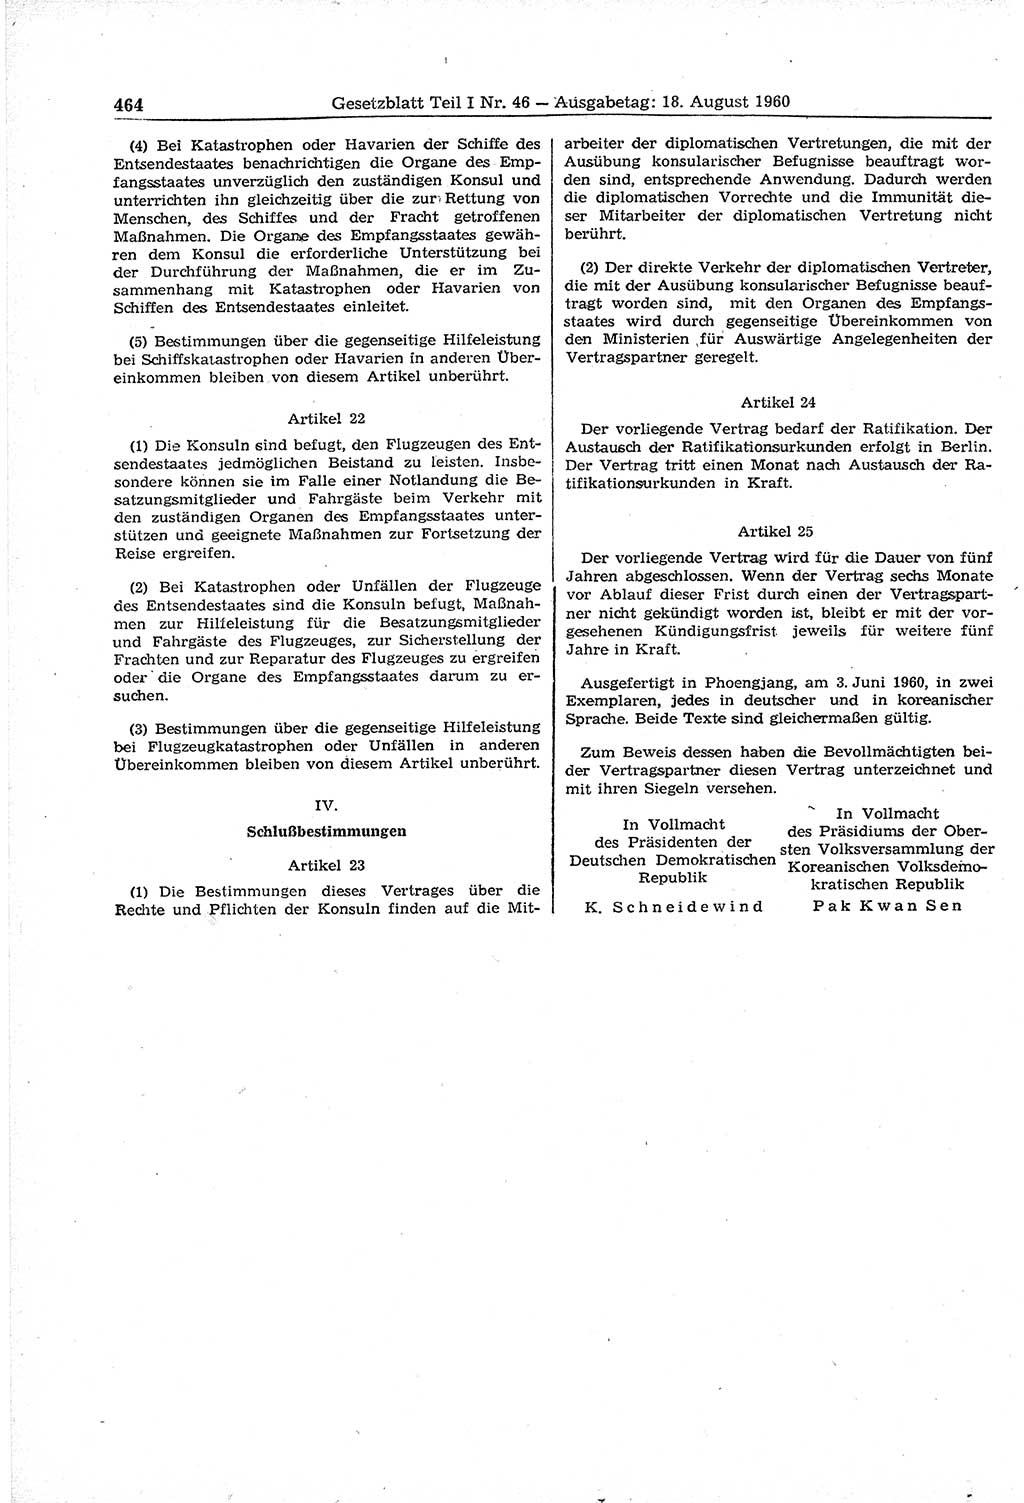 Gesetzblatt (GBl.) der Deutschen Demokratischen Republik (DDR) Teil Ⅰ 1960, Seite 464 (GBl. DDR Ⅰ 1960, S. 464)